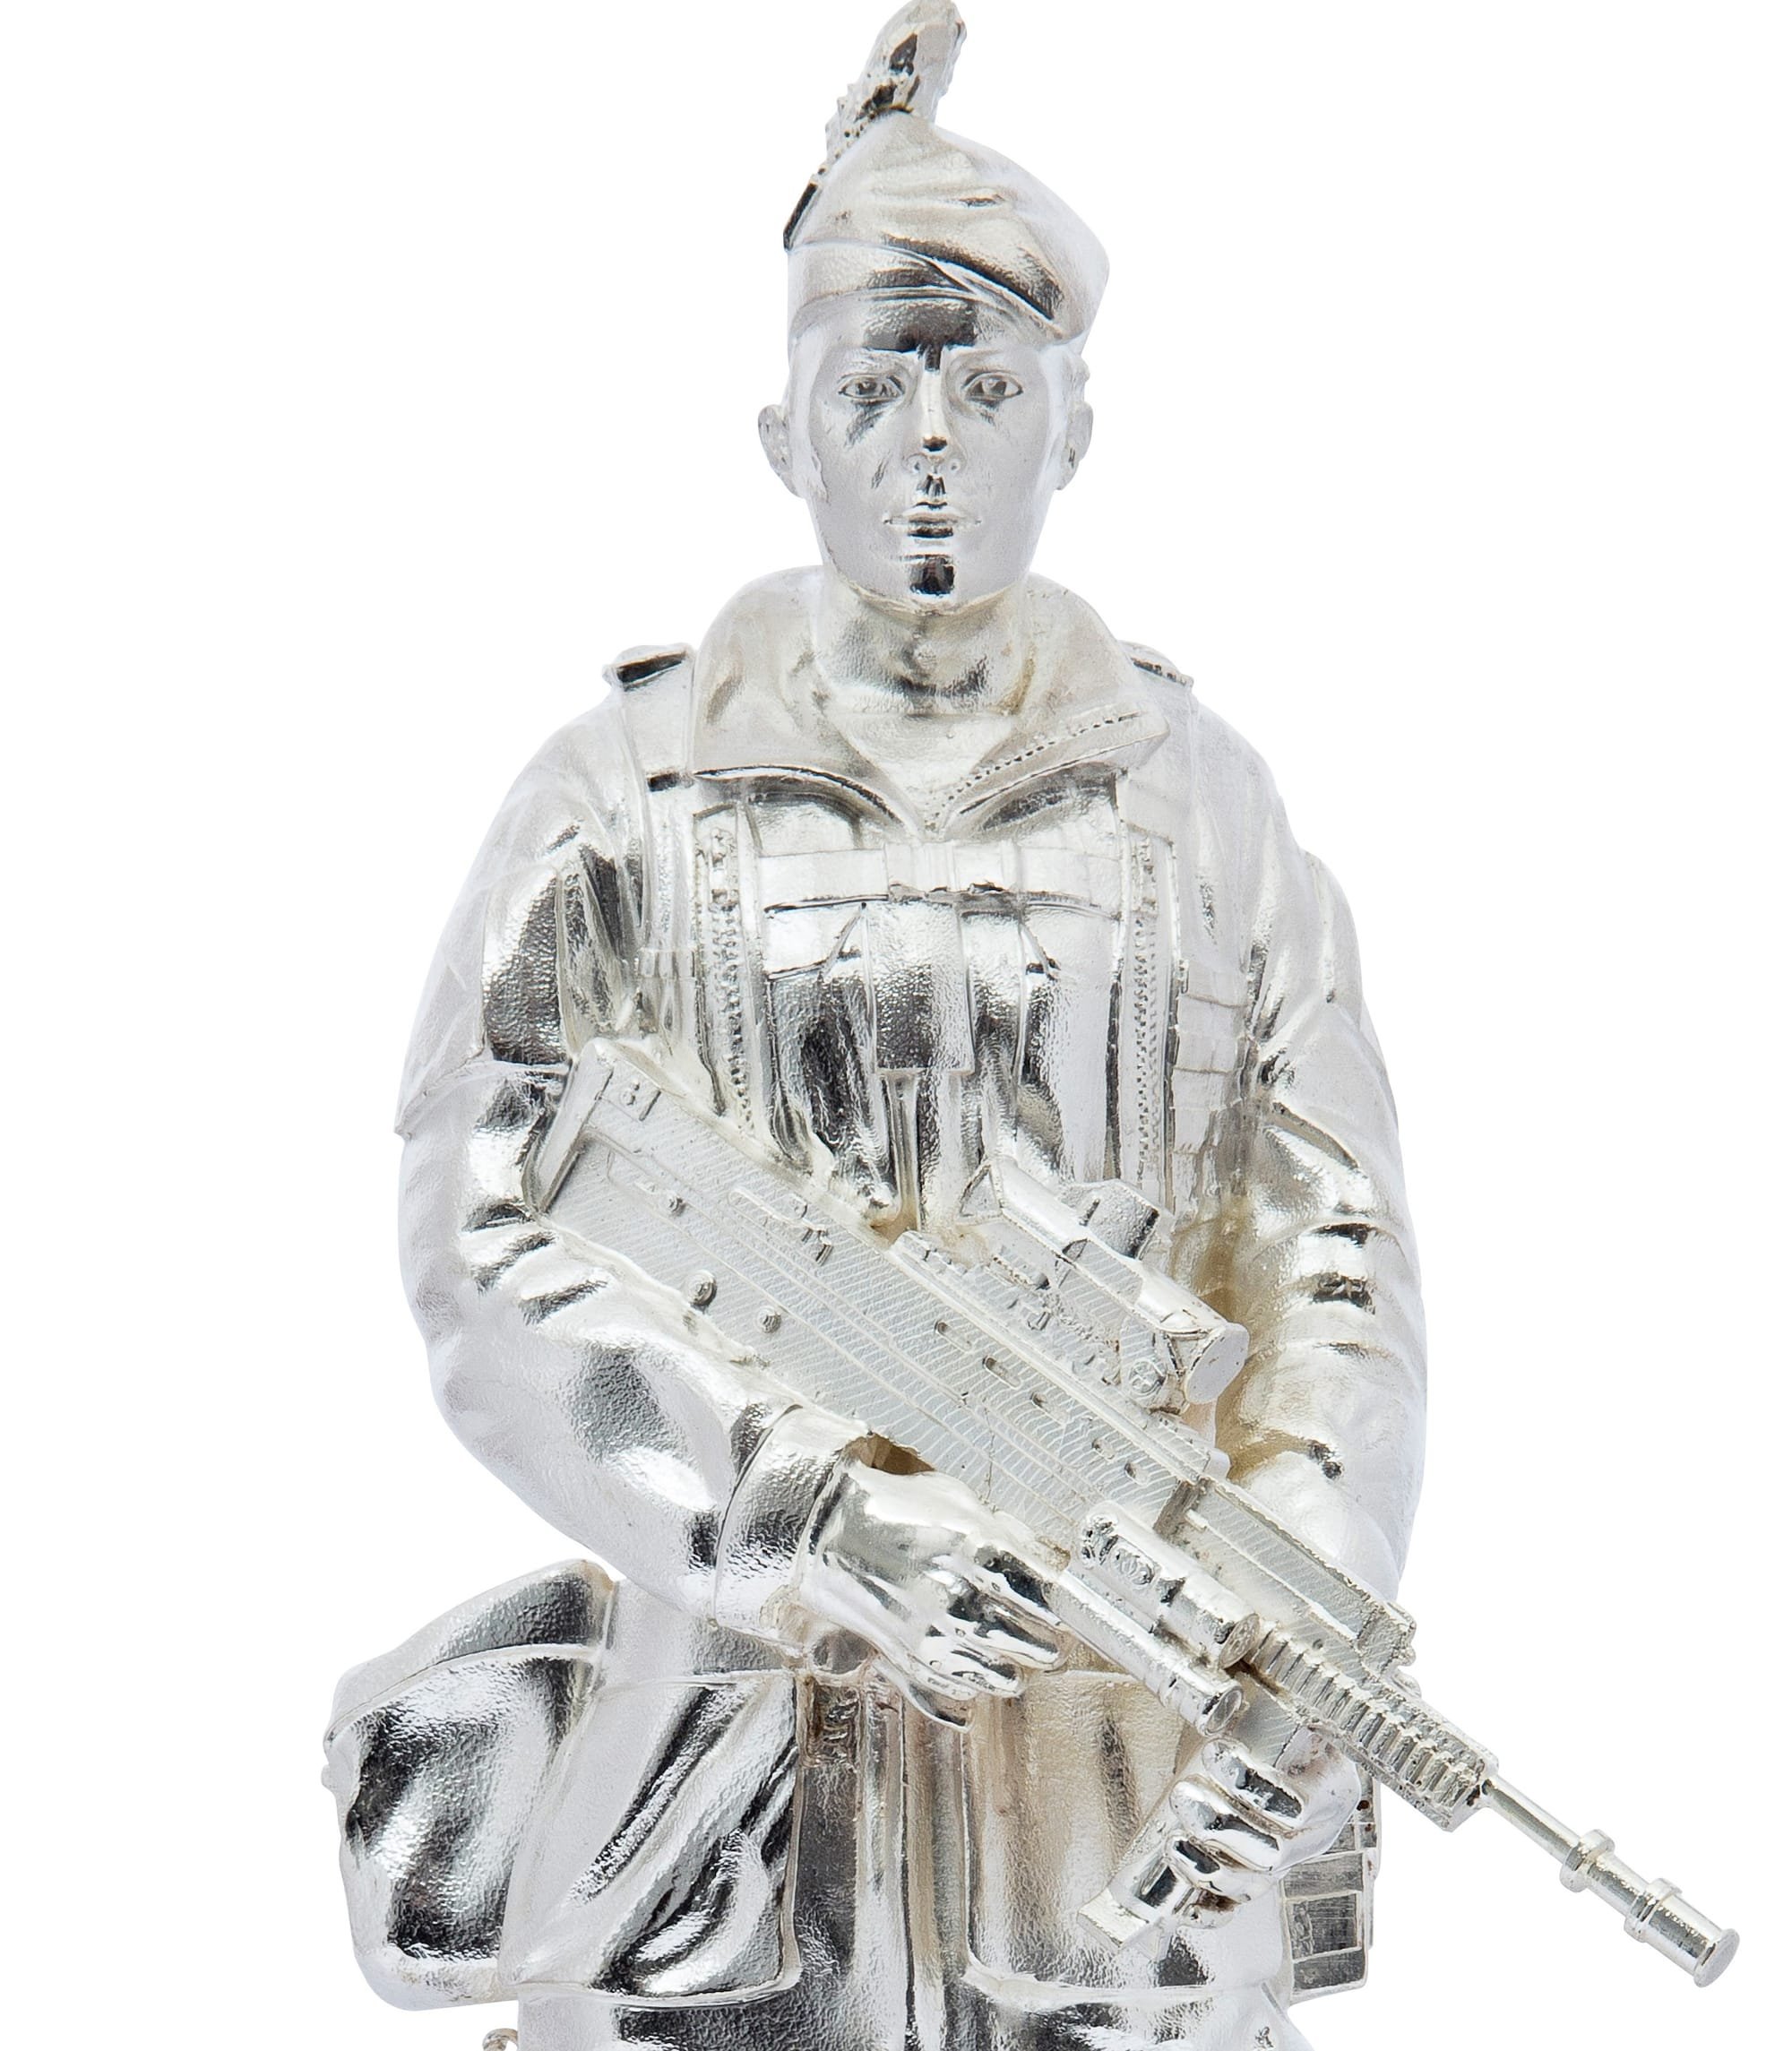 Commemorative military silver model